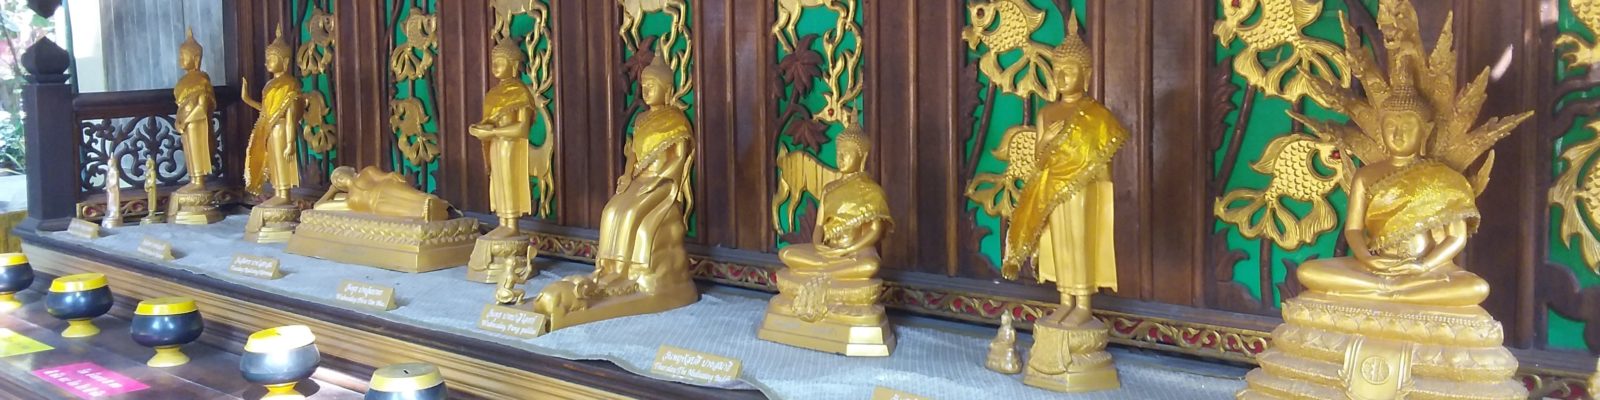 Bouddhisme et symbolisme, les huit bouddhas de la semaine